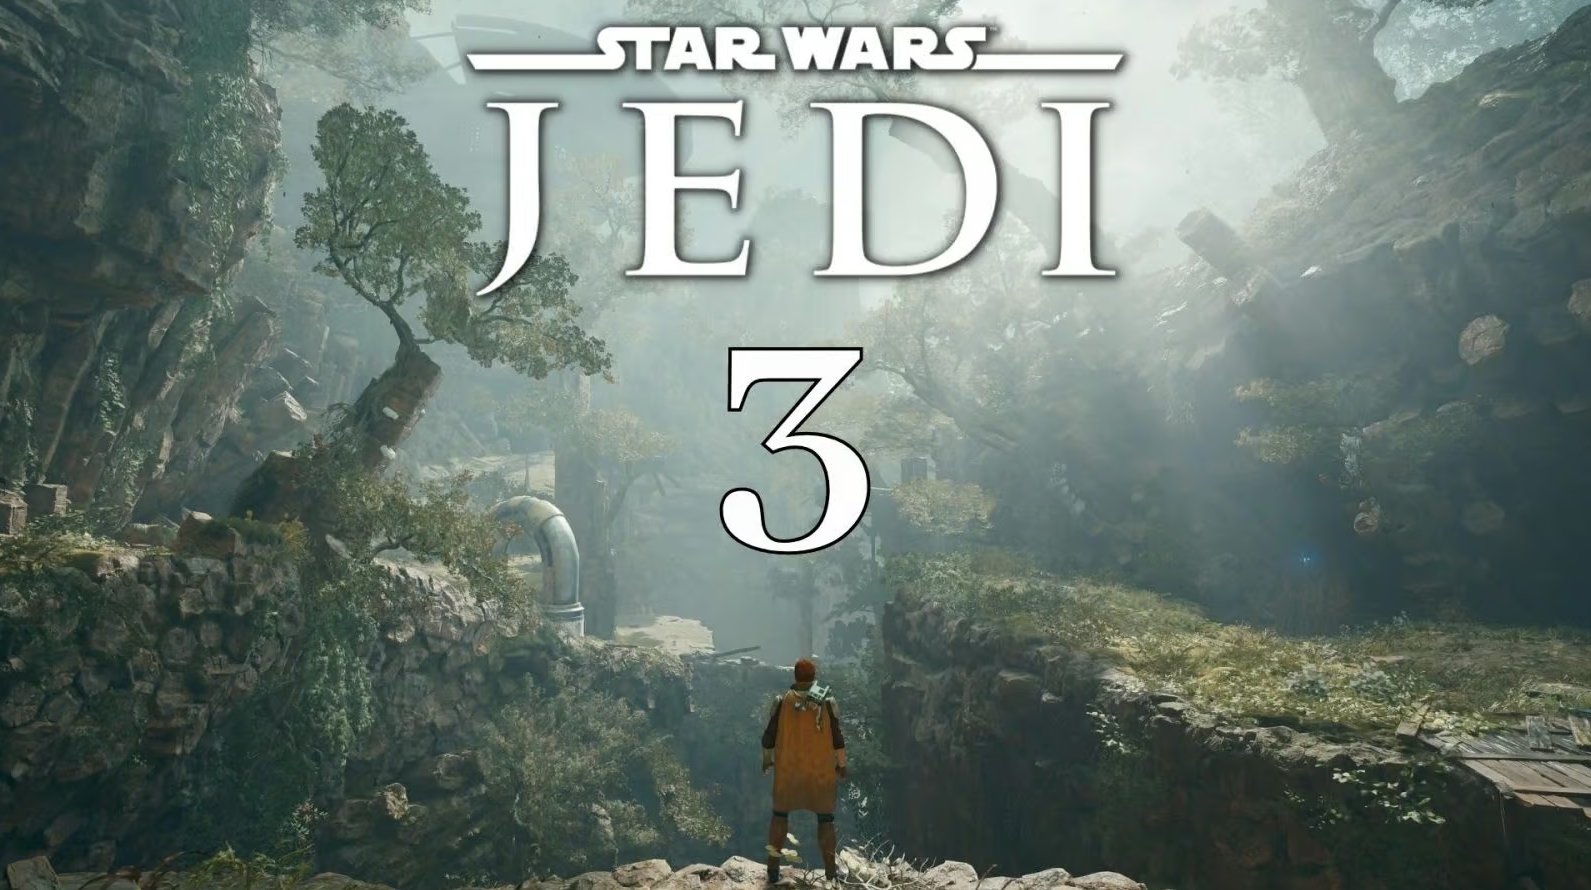 Continuarea Star Wars Jedi: Survivor a fost confirmată ca fiind in dezvoltare de către Cameron Monaghan